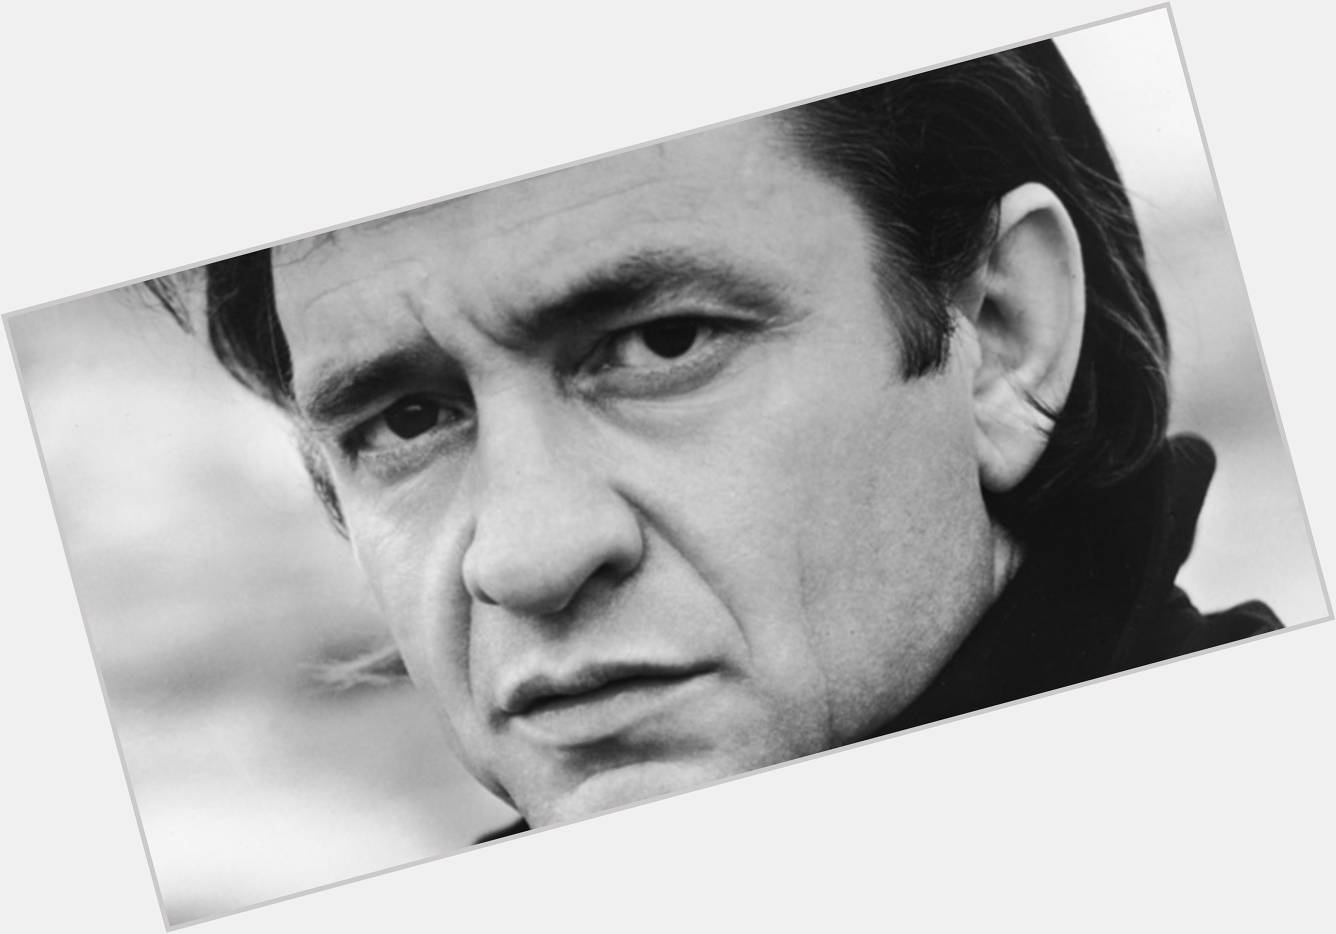 Happy birthday to Johnny Cash! 